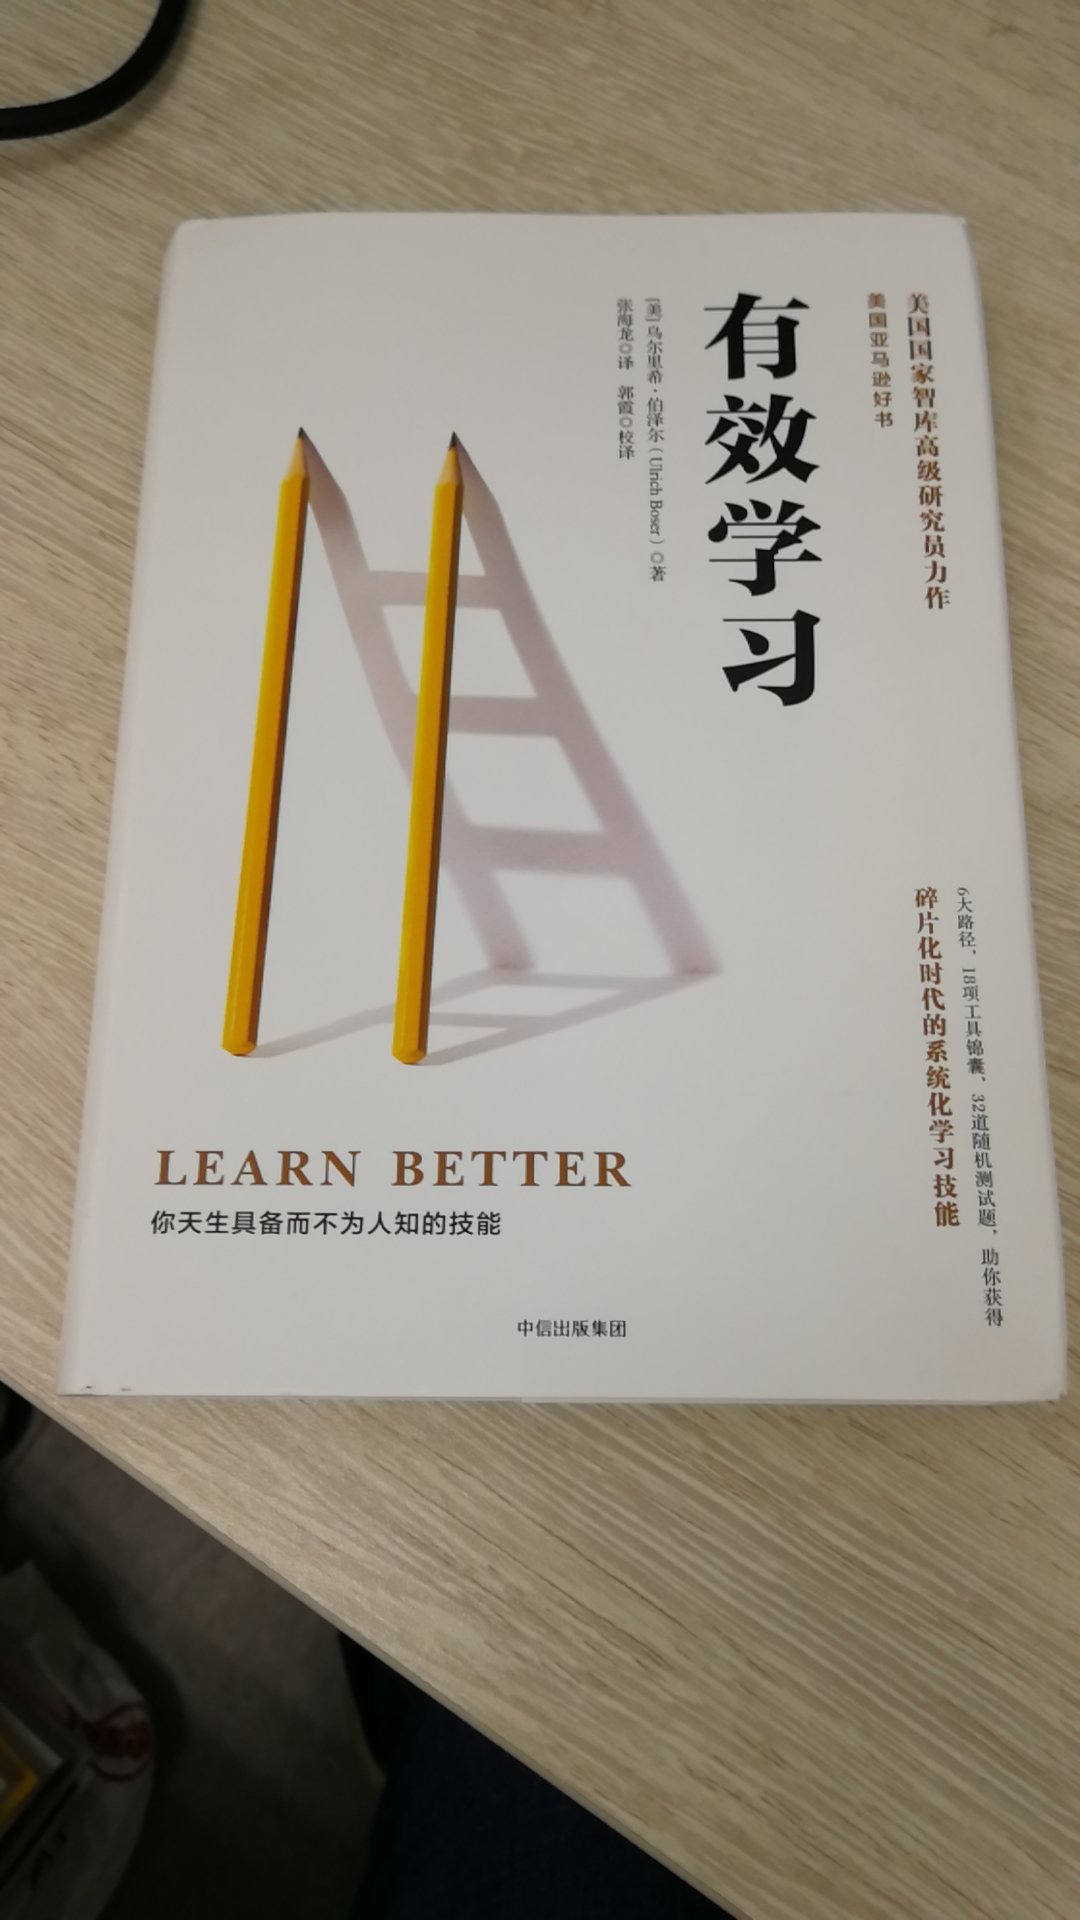 这本书的内容不错挺实用，对以后学习来说非常实用，以后还会买。